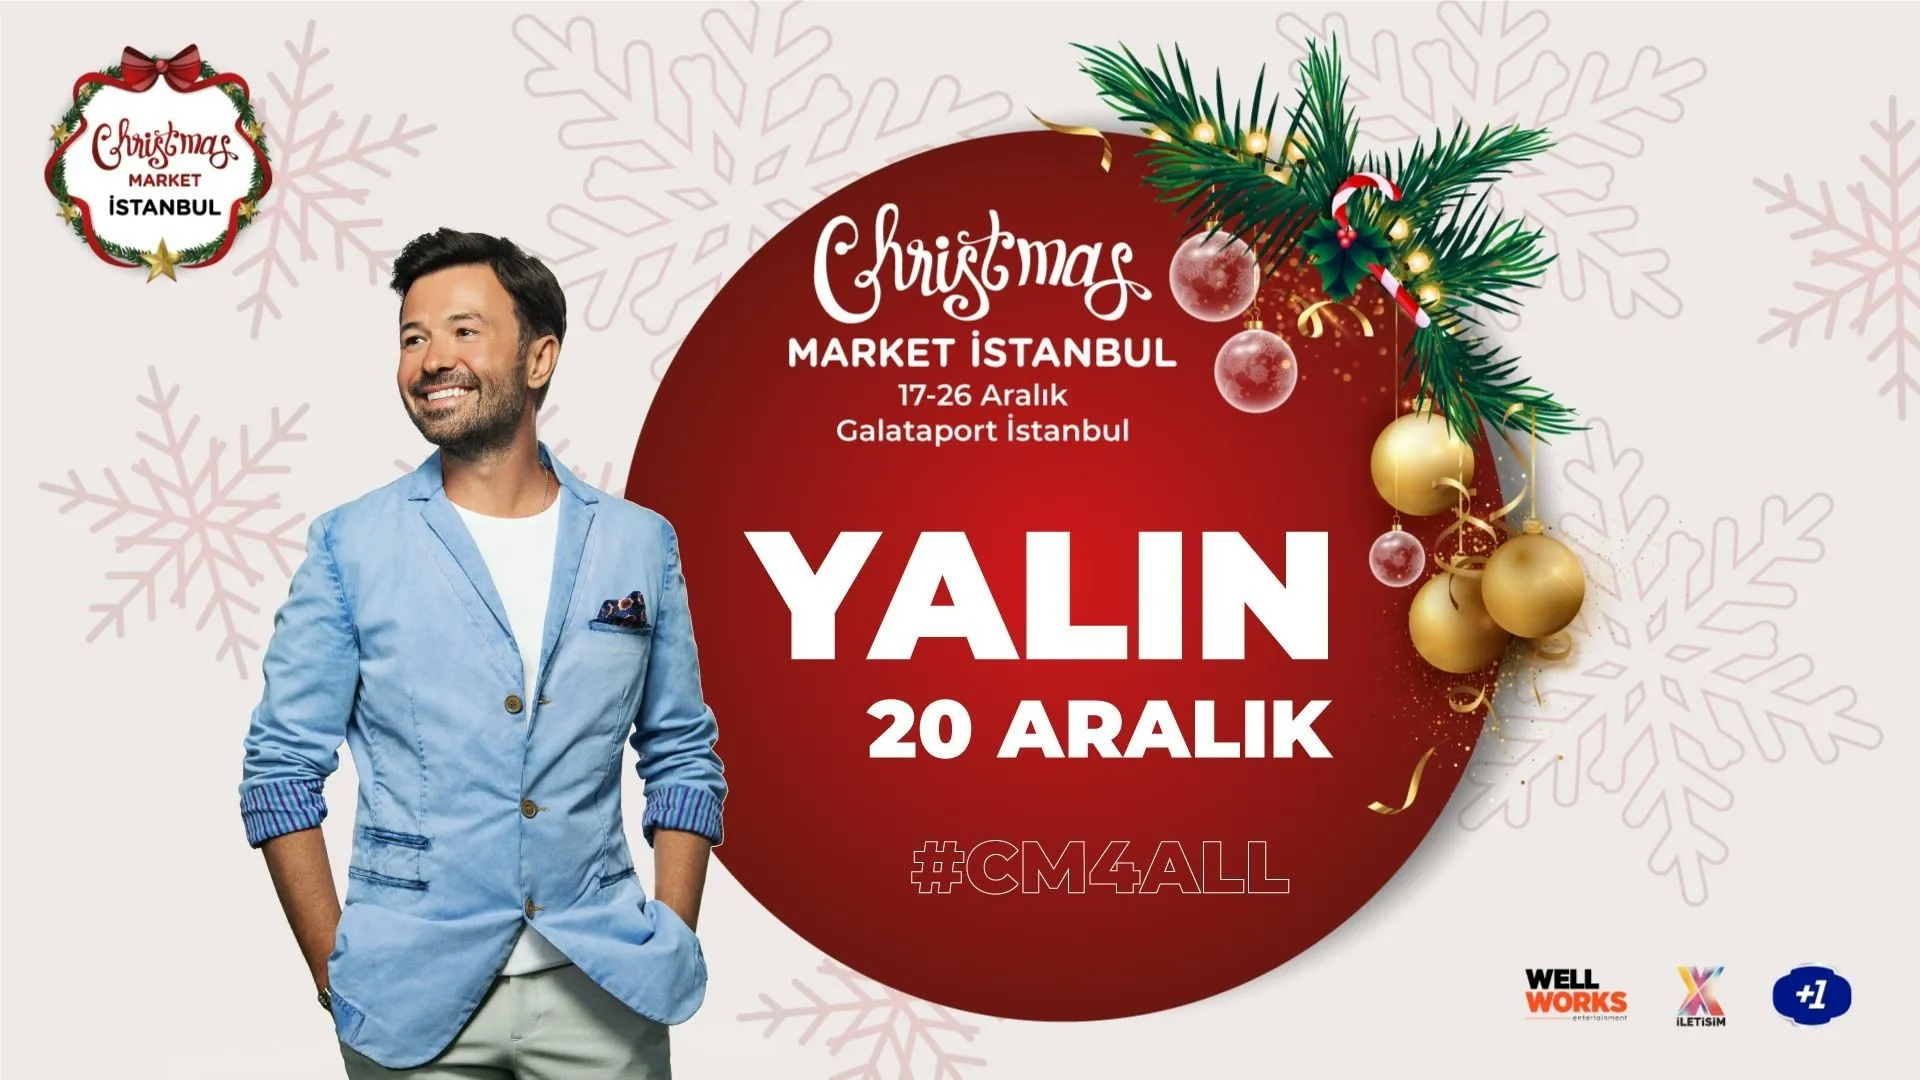 Yalın - Christmas Market İstanbul